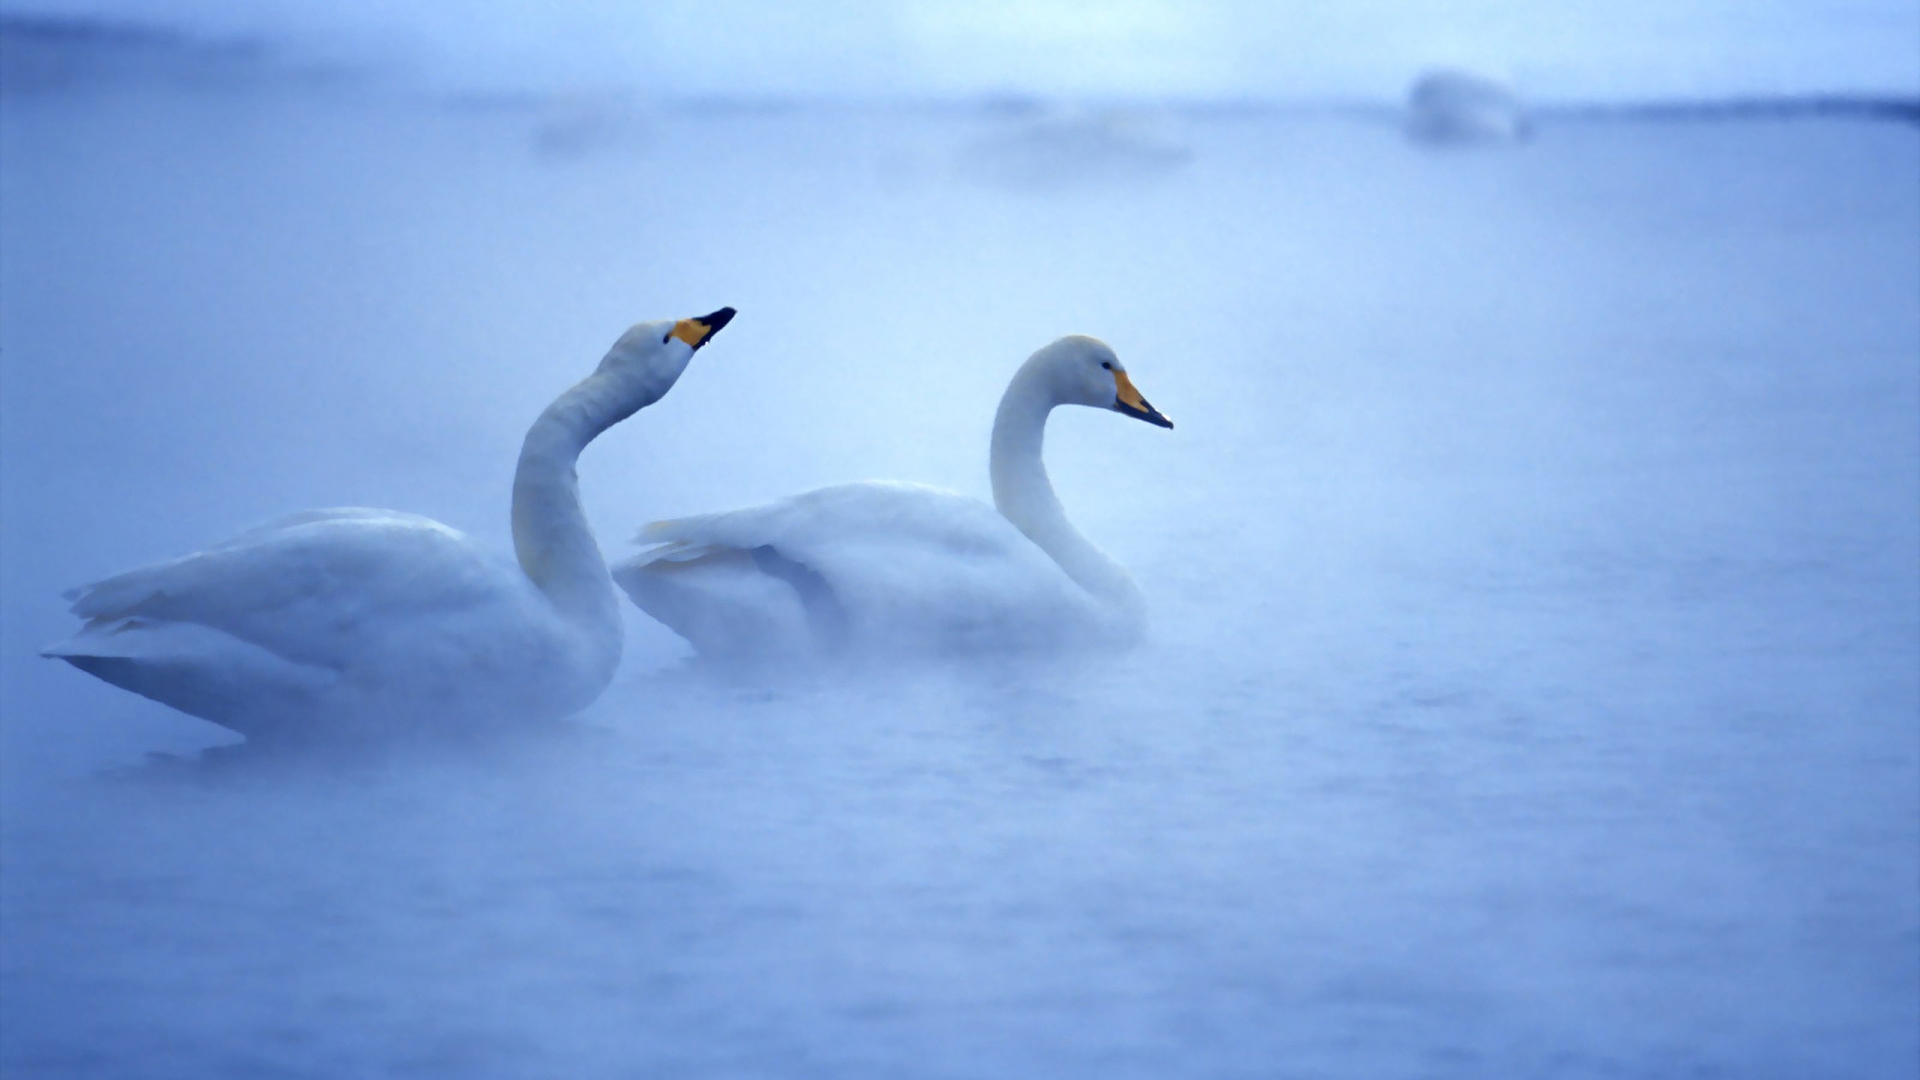 Lovely Swans for 1920 x 1080 HDTV 1080p resolution